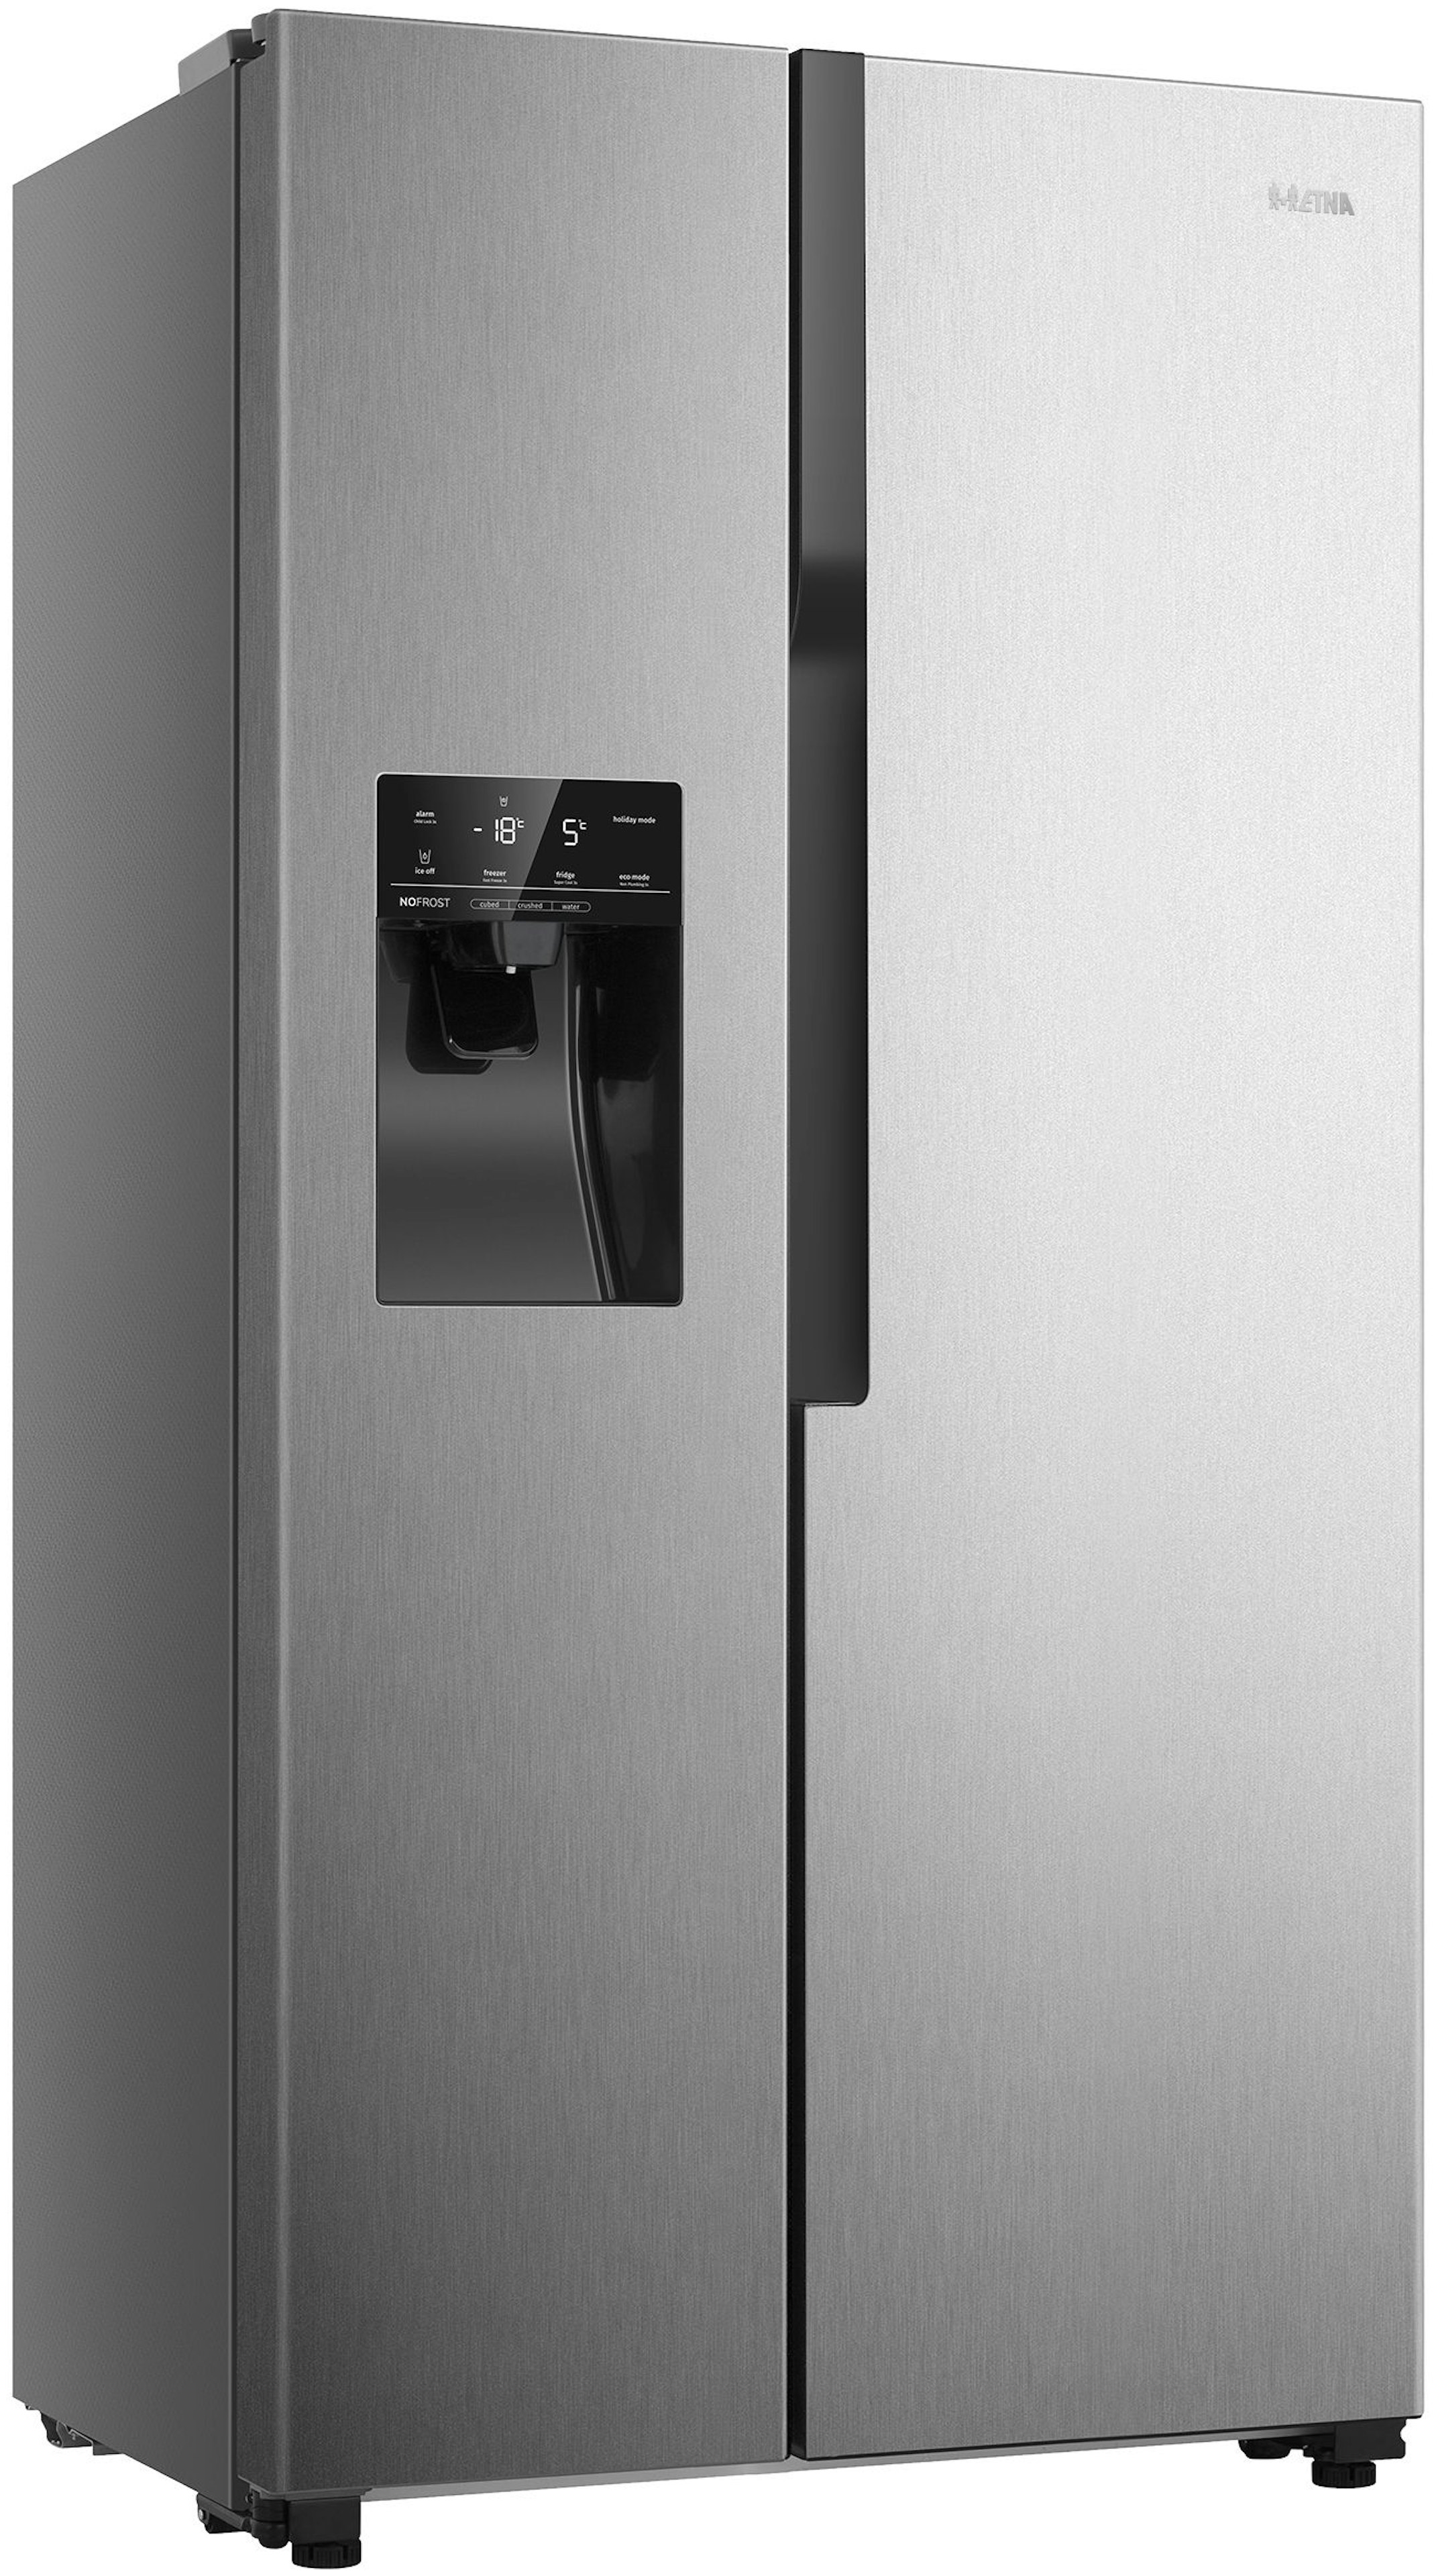 Etna AKV778IRVS vrijstaand koelkast afbeelding 6